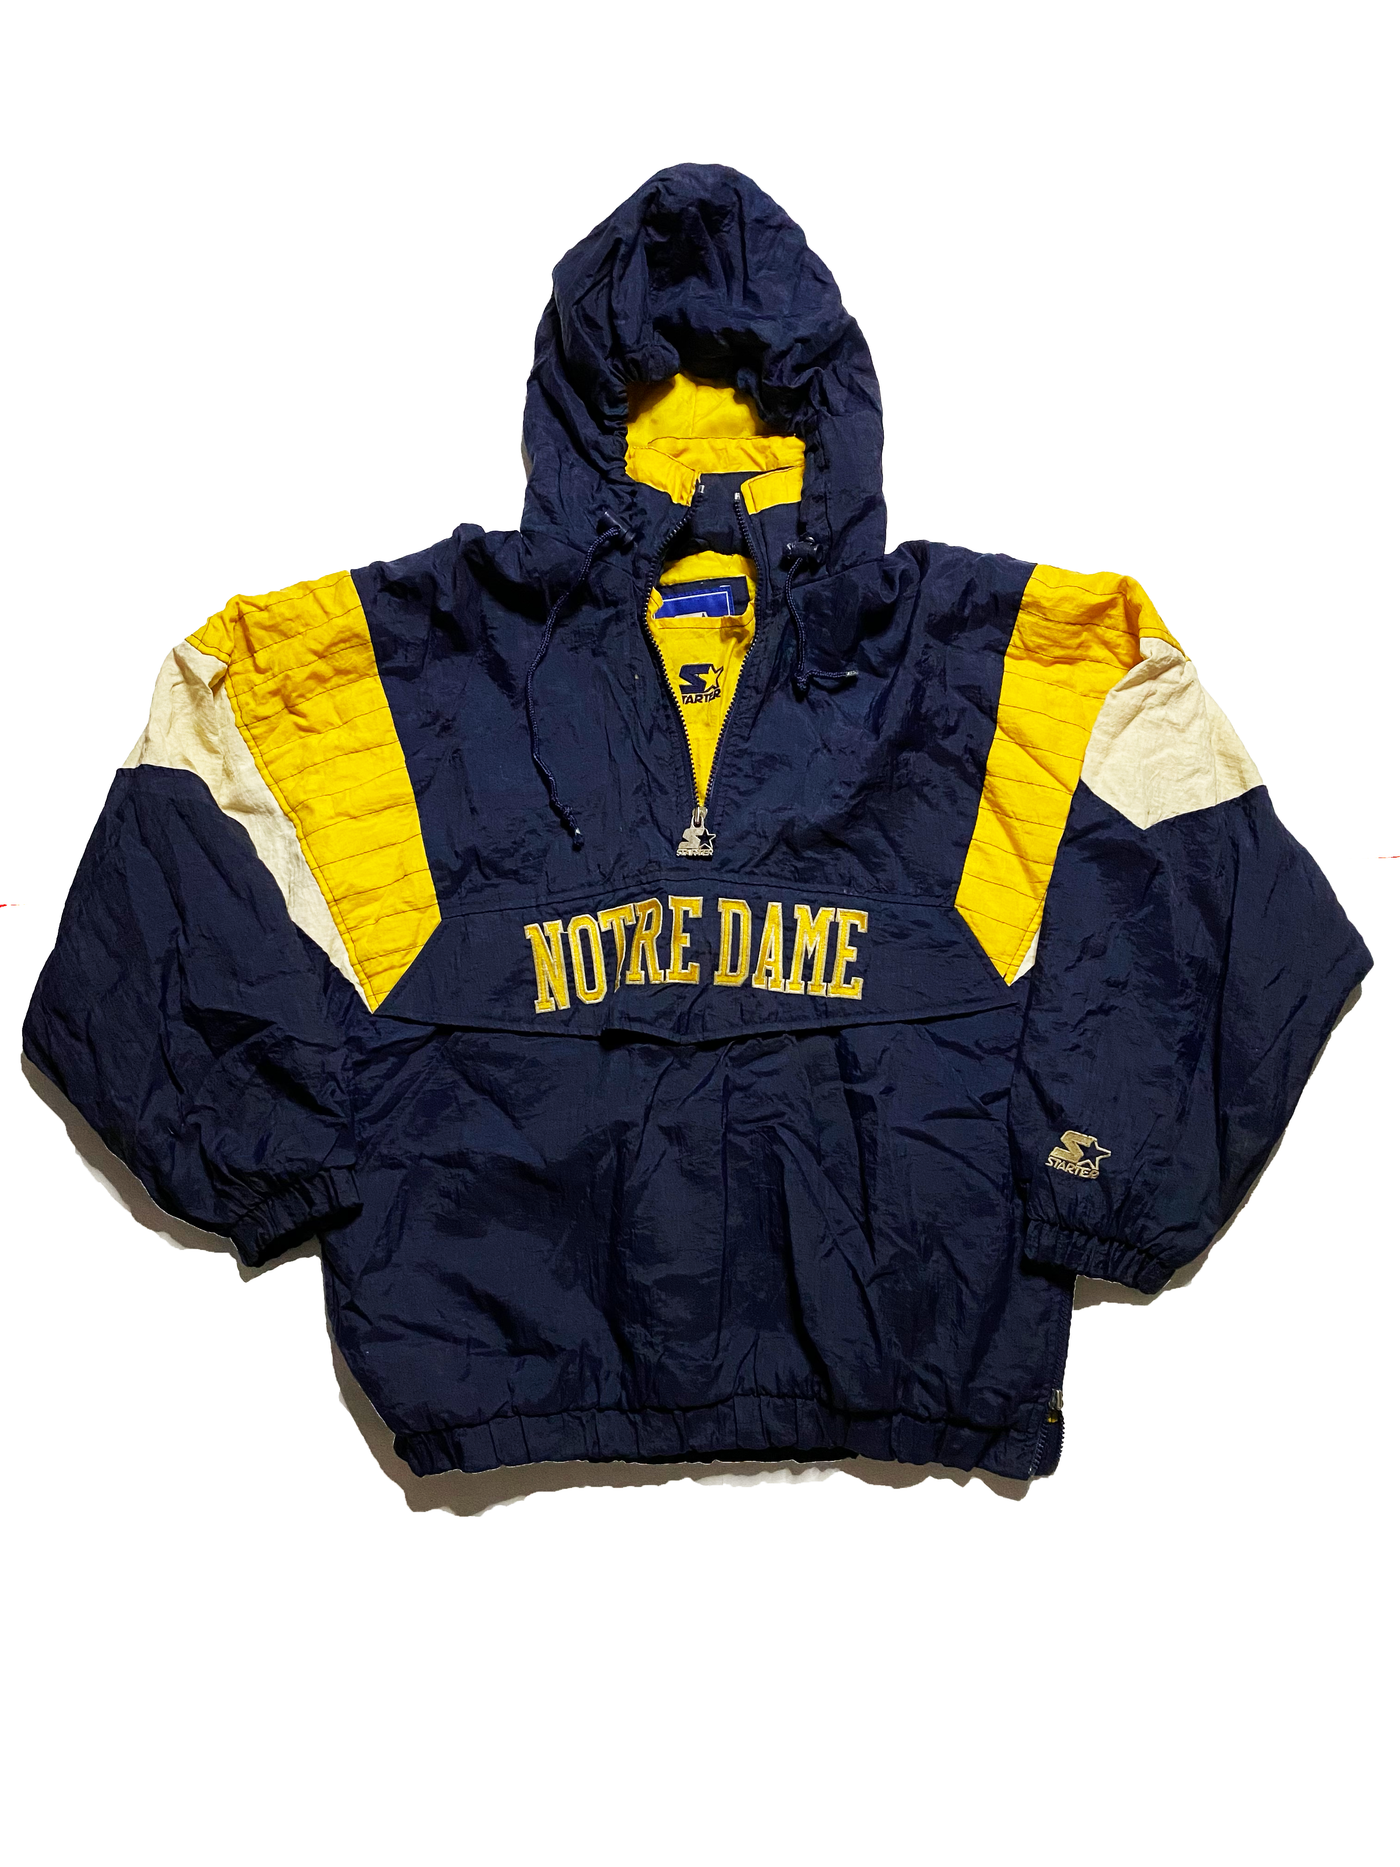 Vintage Notre Dame Starter Jacket